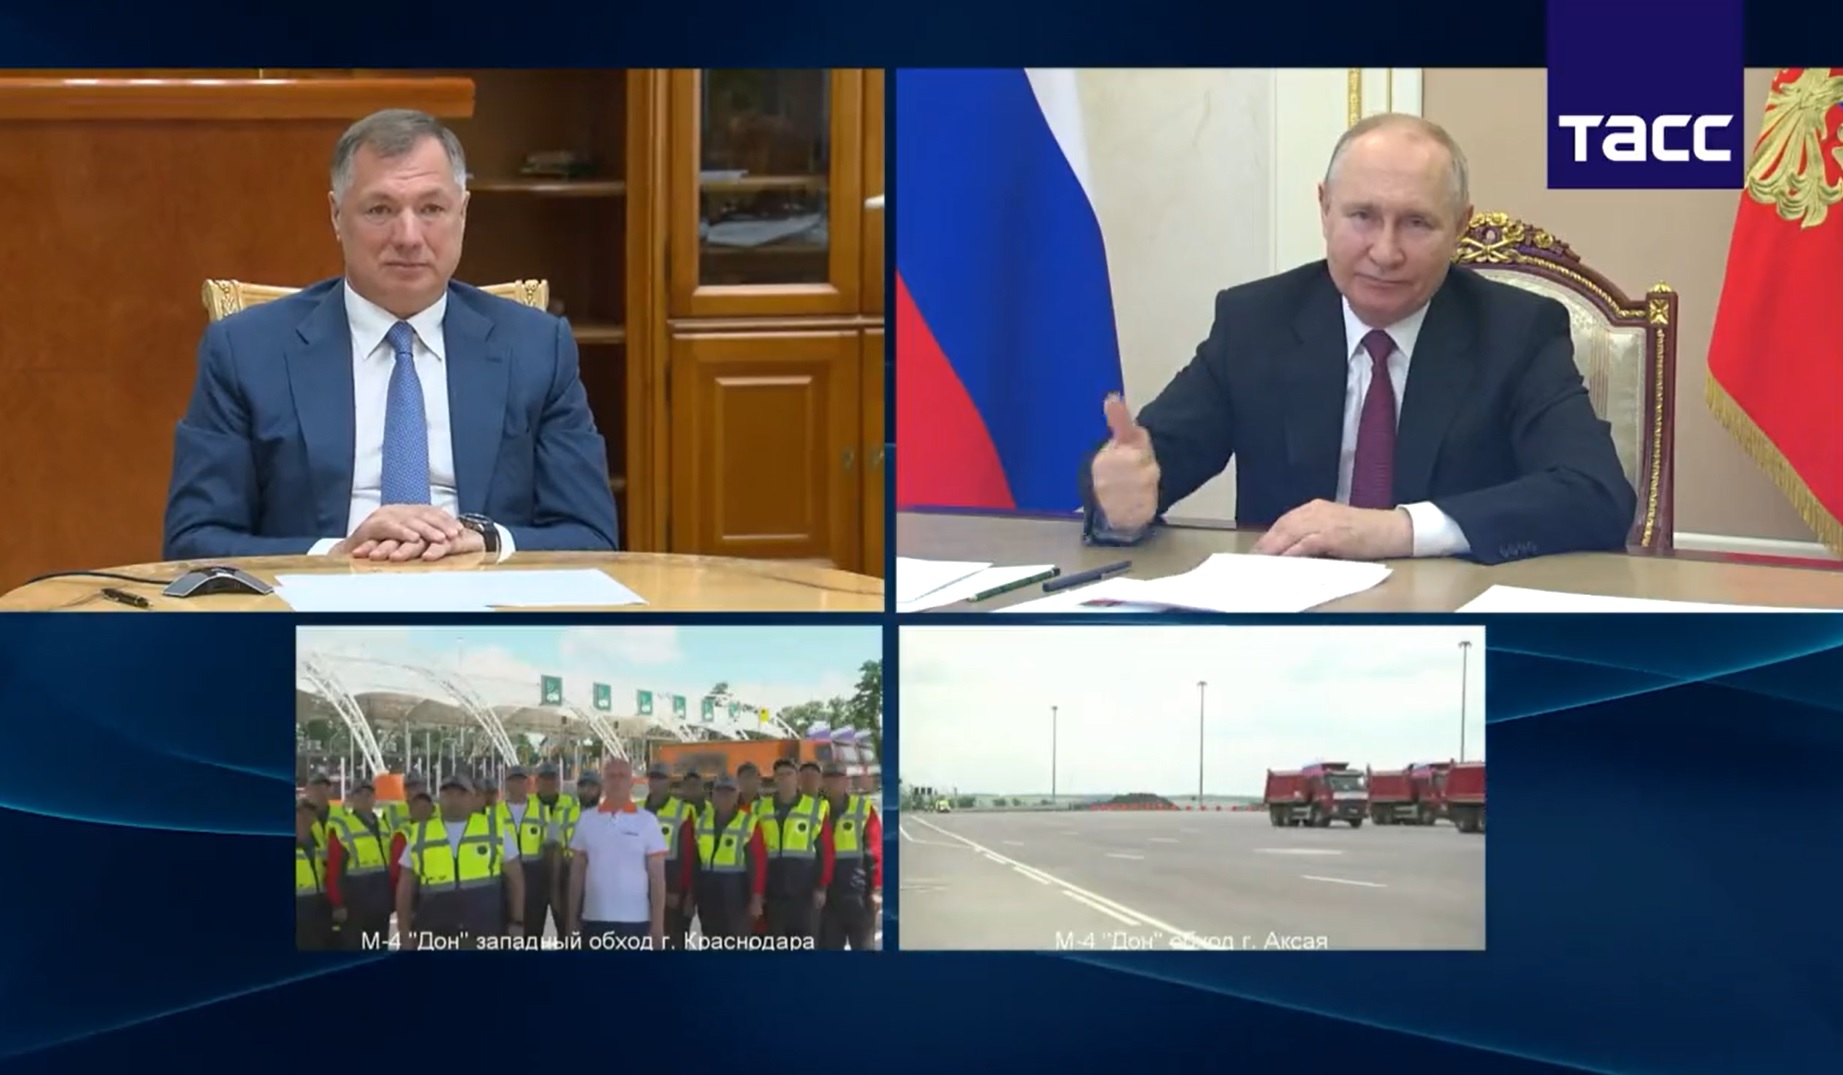 Útavató ceremóniát rendeztek Putyinnak, aki az irodájából, webkamerán keresztül nézte az egészet